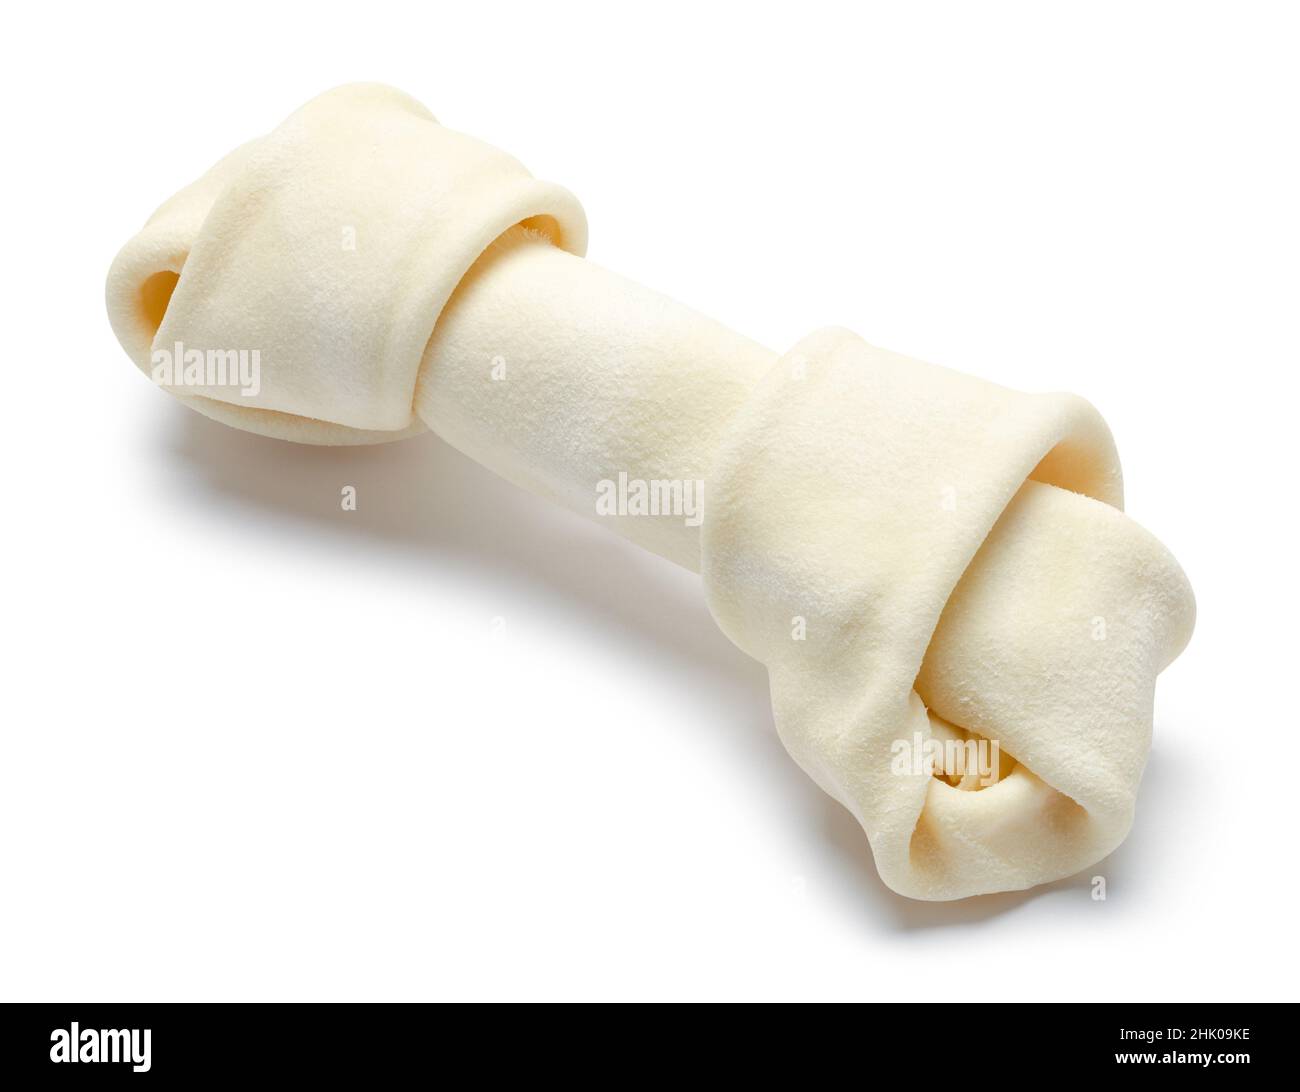 Kleiner Rawhide Hundeknochen auf Weiß ausgeschnitten. Stockfoto